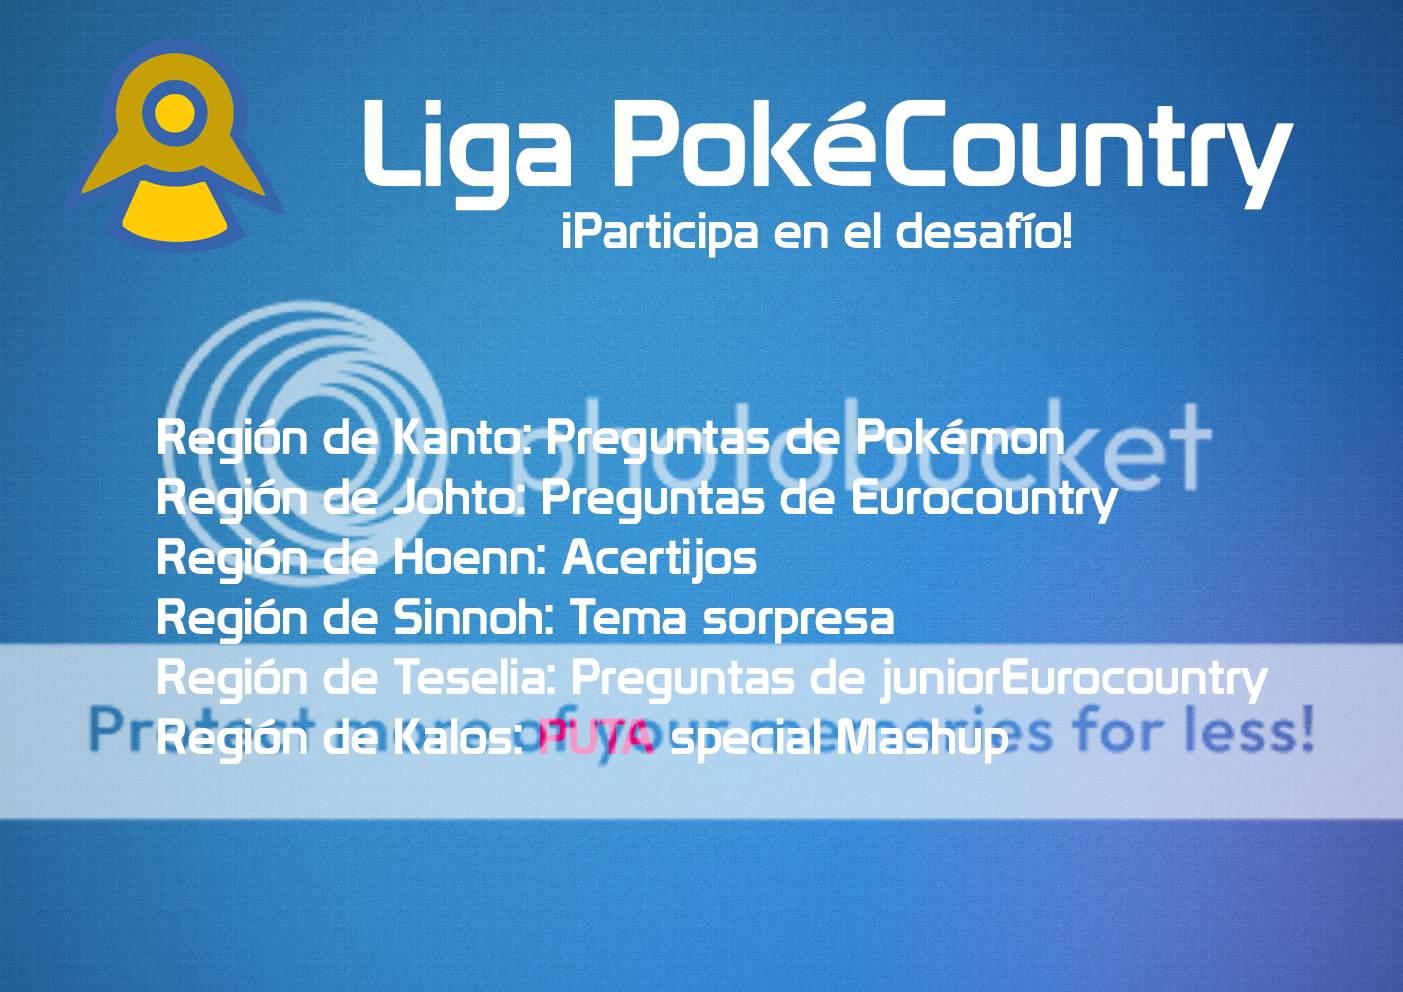 [INSCRIPCIONES] Liga PokéCountry: El desafío Pokémon C63aae84-a95e-4a16-a1b0-78a415dc3bcc-original